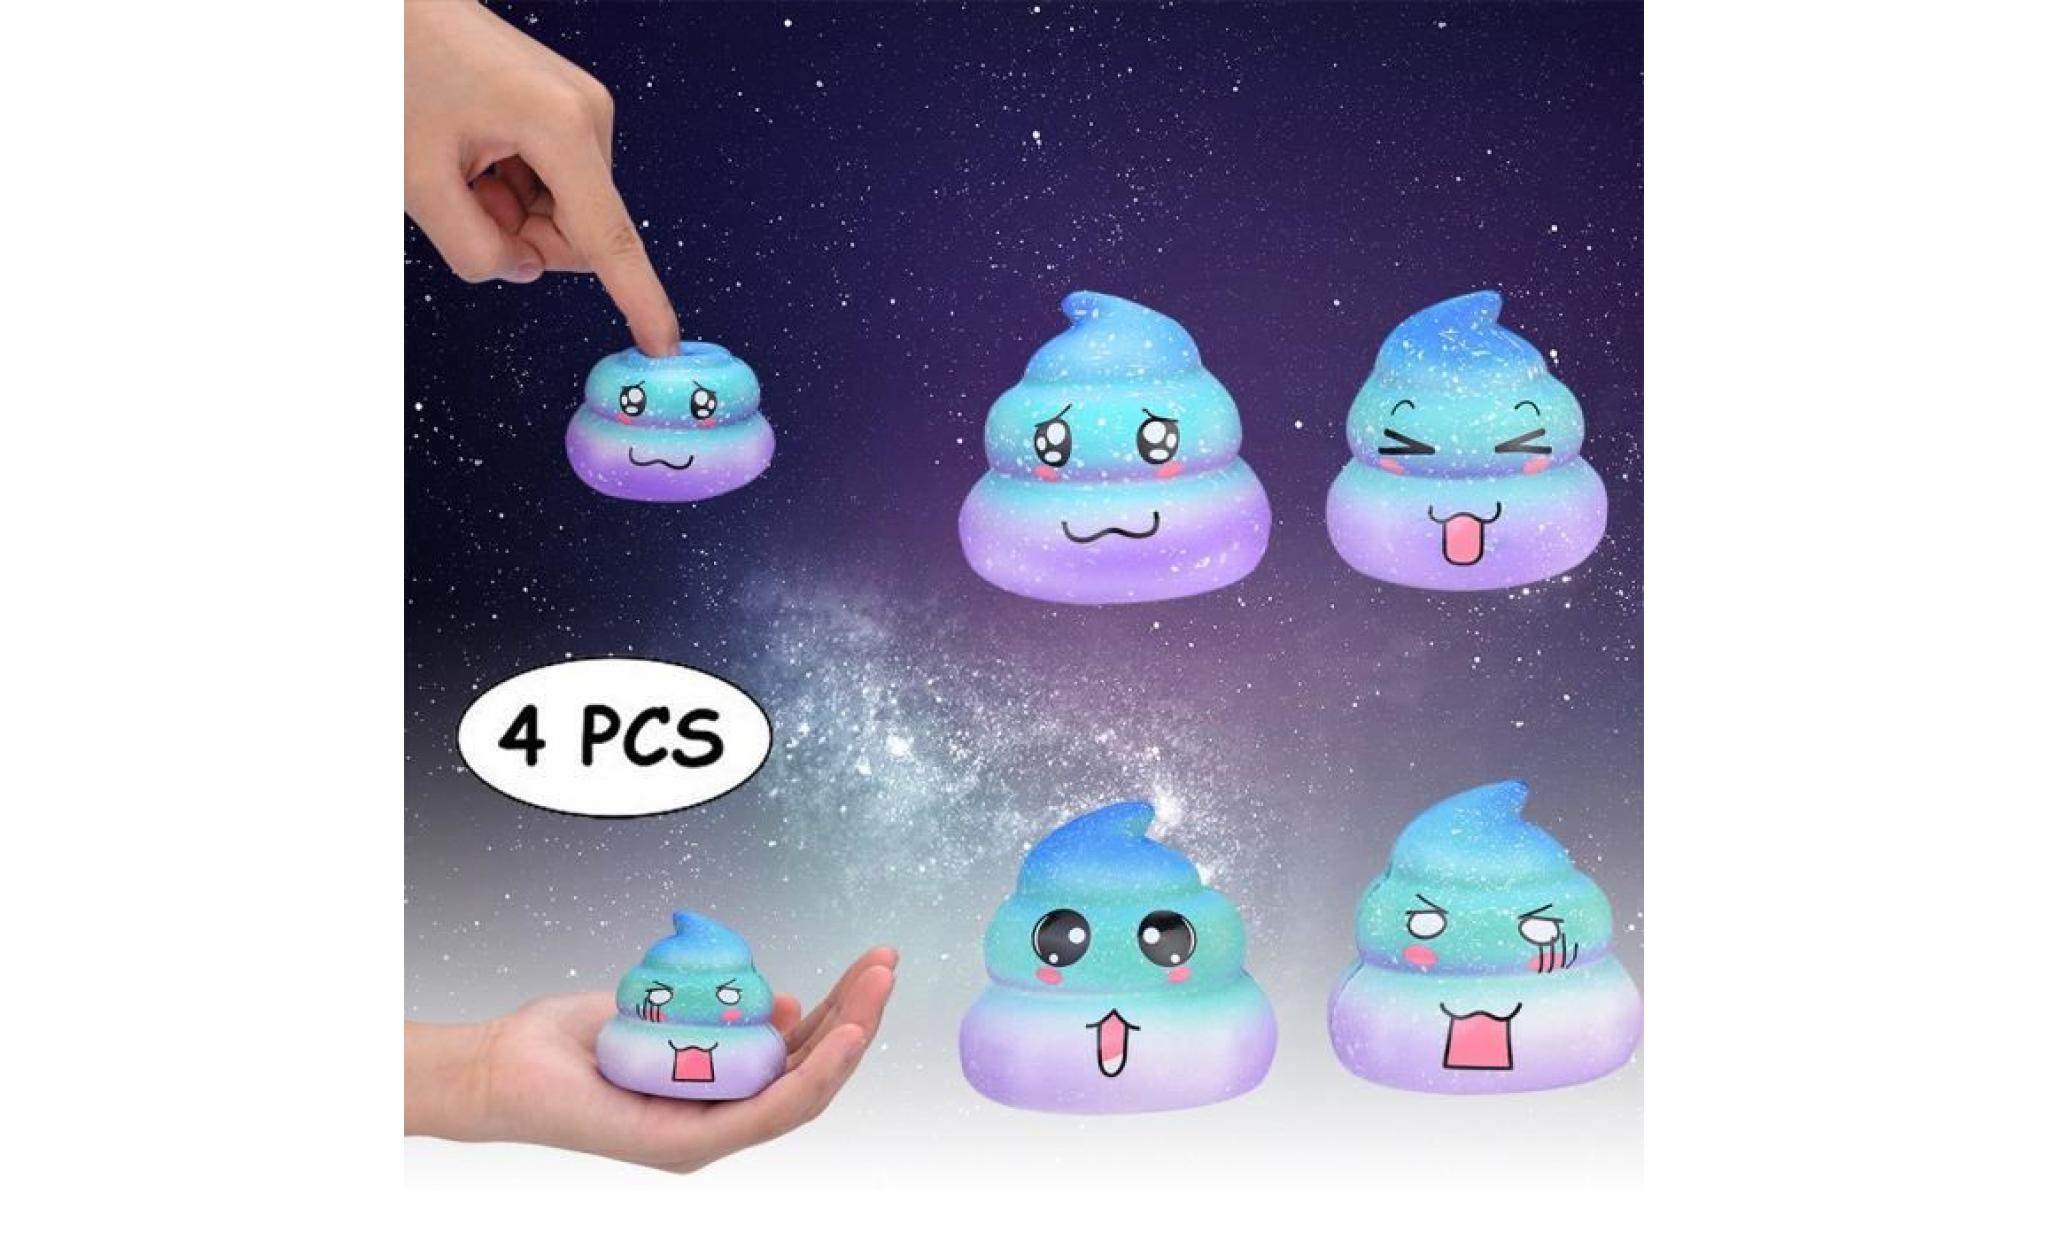 4pcs galaxy poo odeur agréable squishies jouets squeeze lente hausse du stress toys releveur bal7491